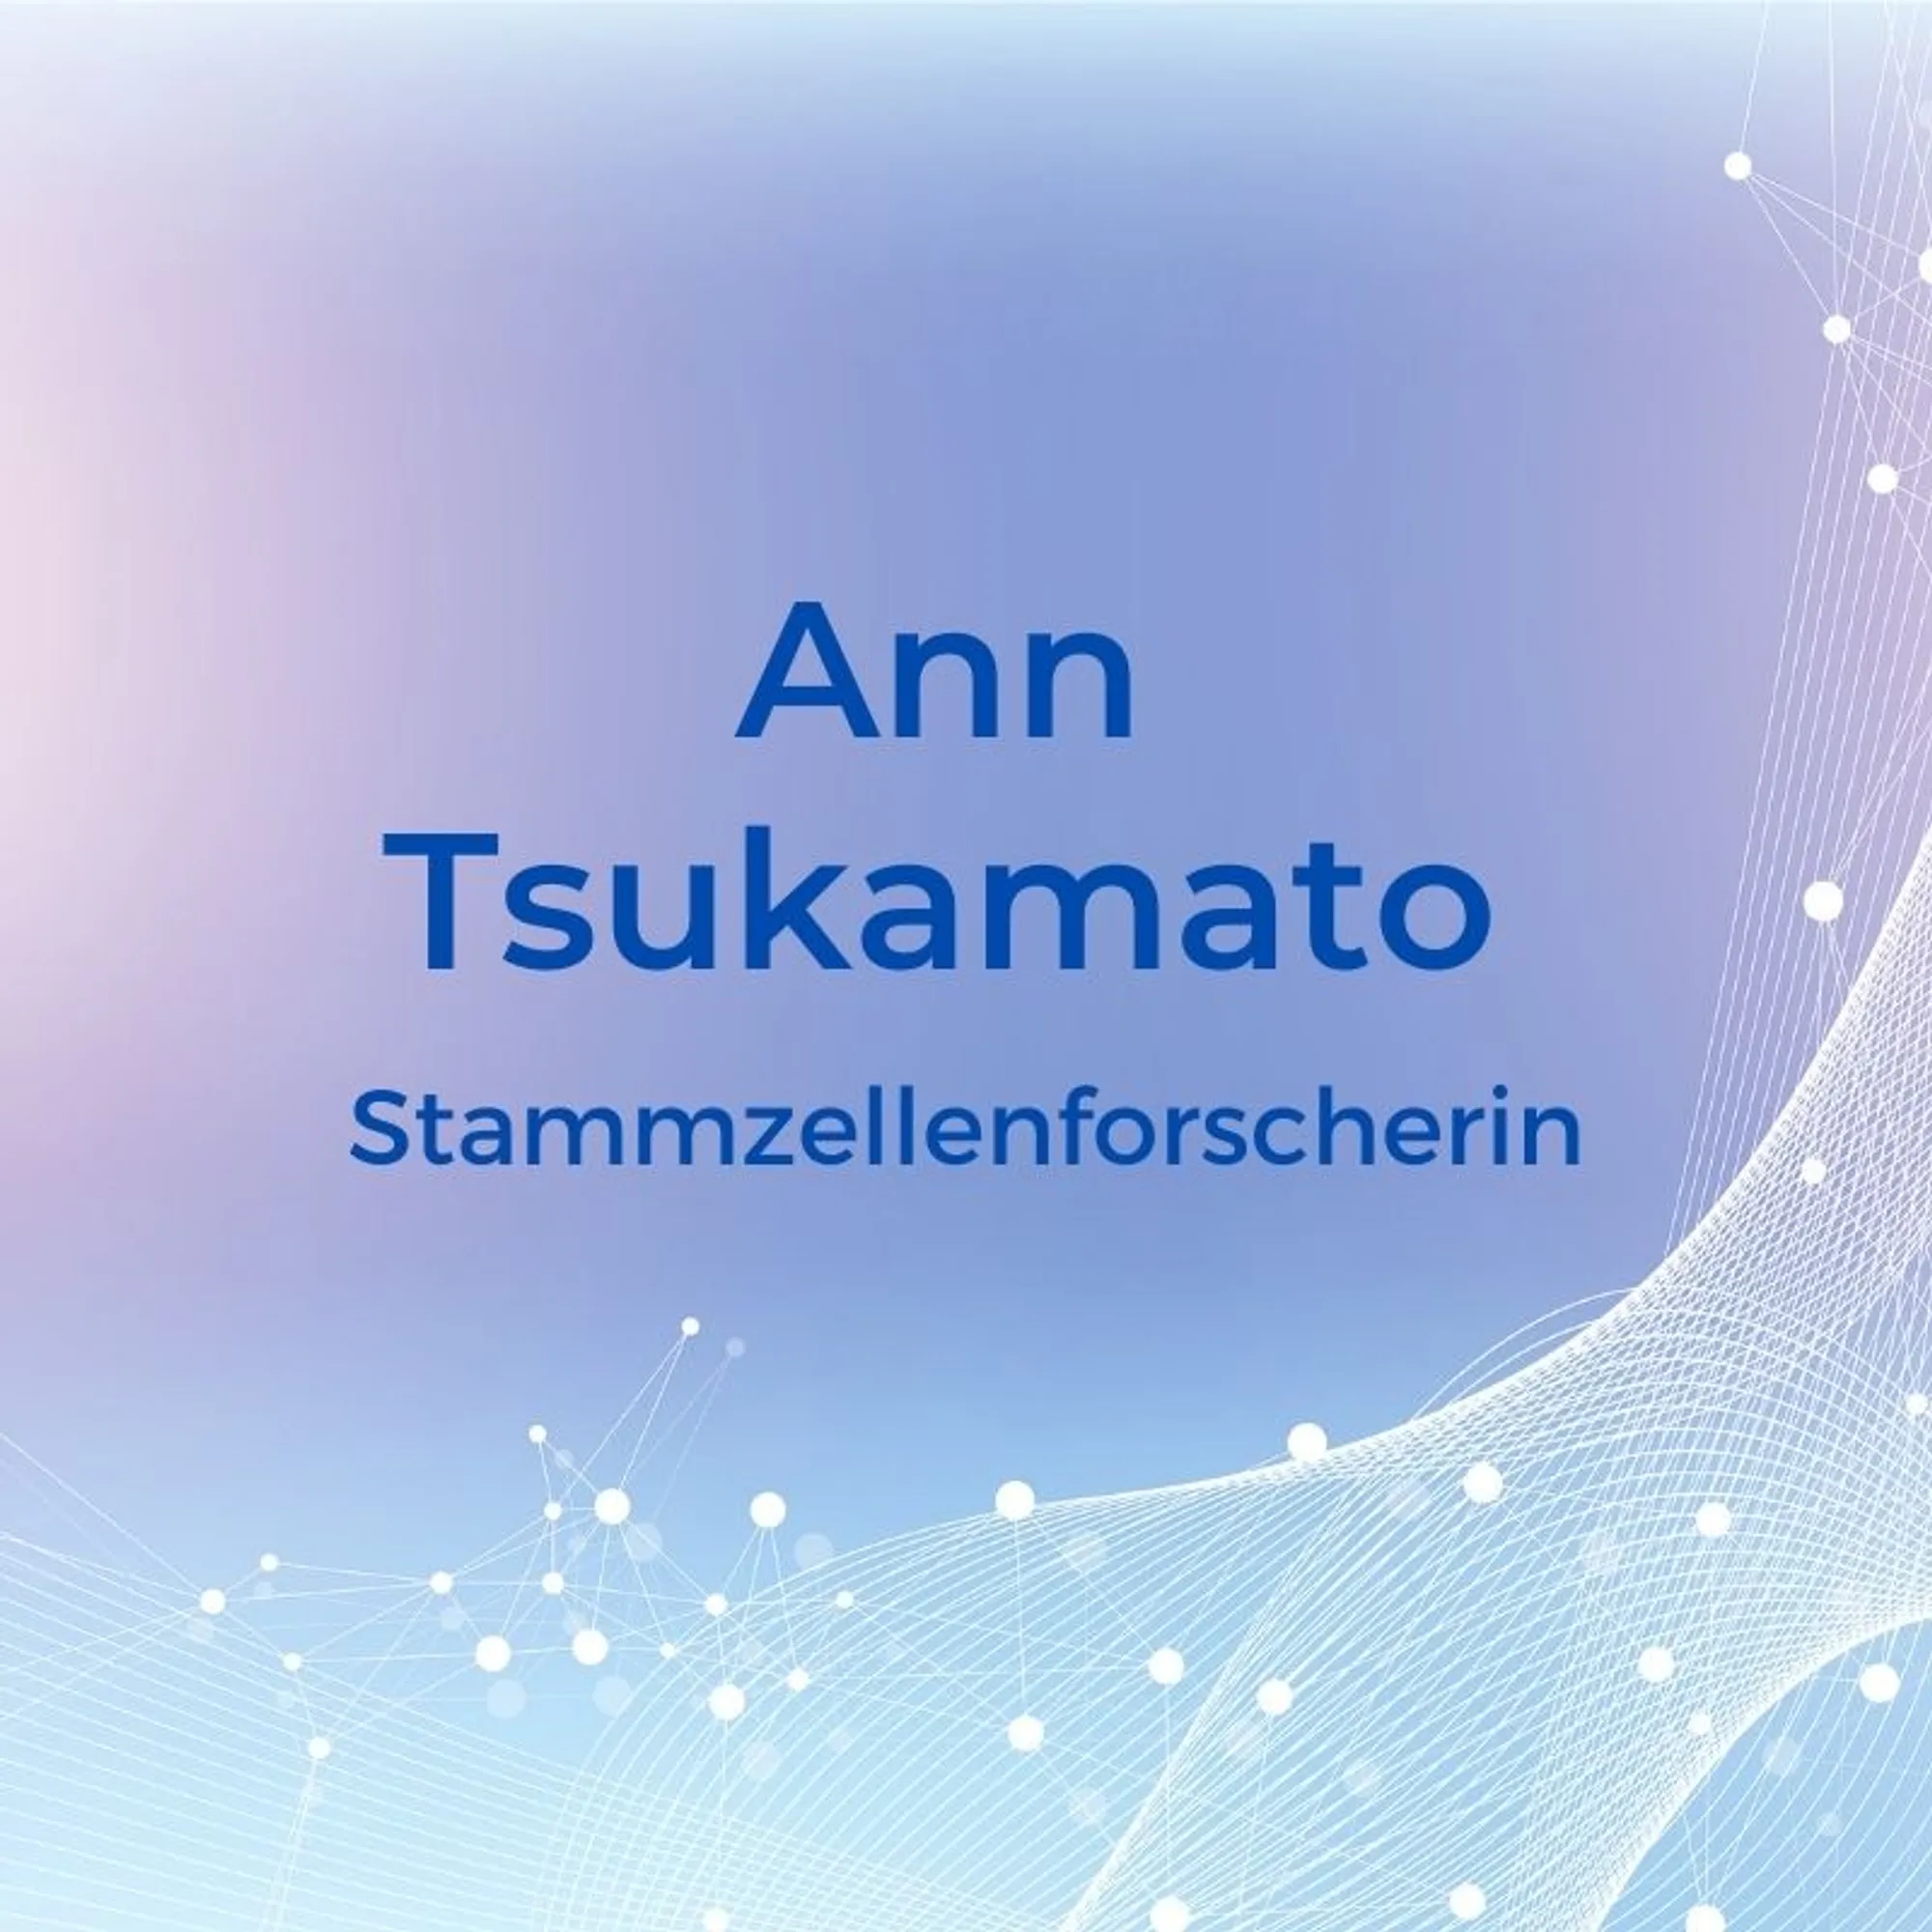 1. Ann Tsukamato (*1952) – StammzellenforscherinDie bedeutendsten Fortschritte in der Zellmedizin verdanken wir Ann Tsukamoto. Der US-amerikanischen Stammzellenforscherin und ihren Kollegen gelang es 1991 menschliche Blutstammzellen zu isolieren. Damit ermöglichten sie eine einfachere Erforschung von schwer heilbaren Krankheiten wie Leukämie.
